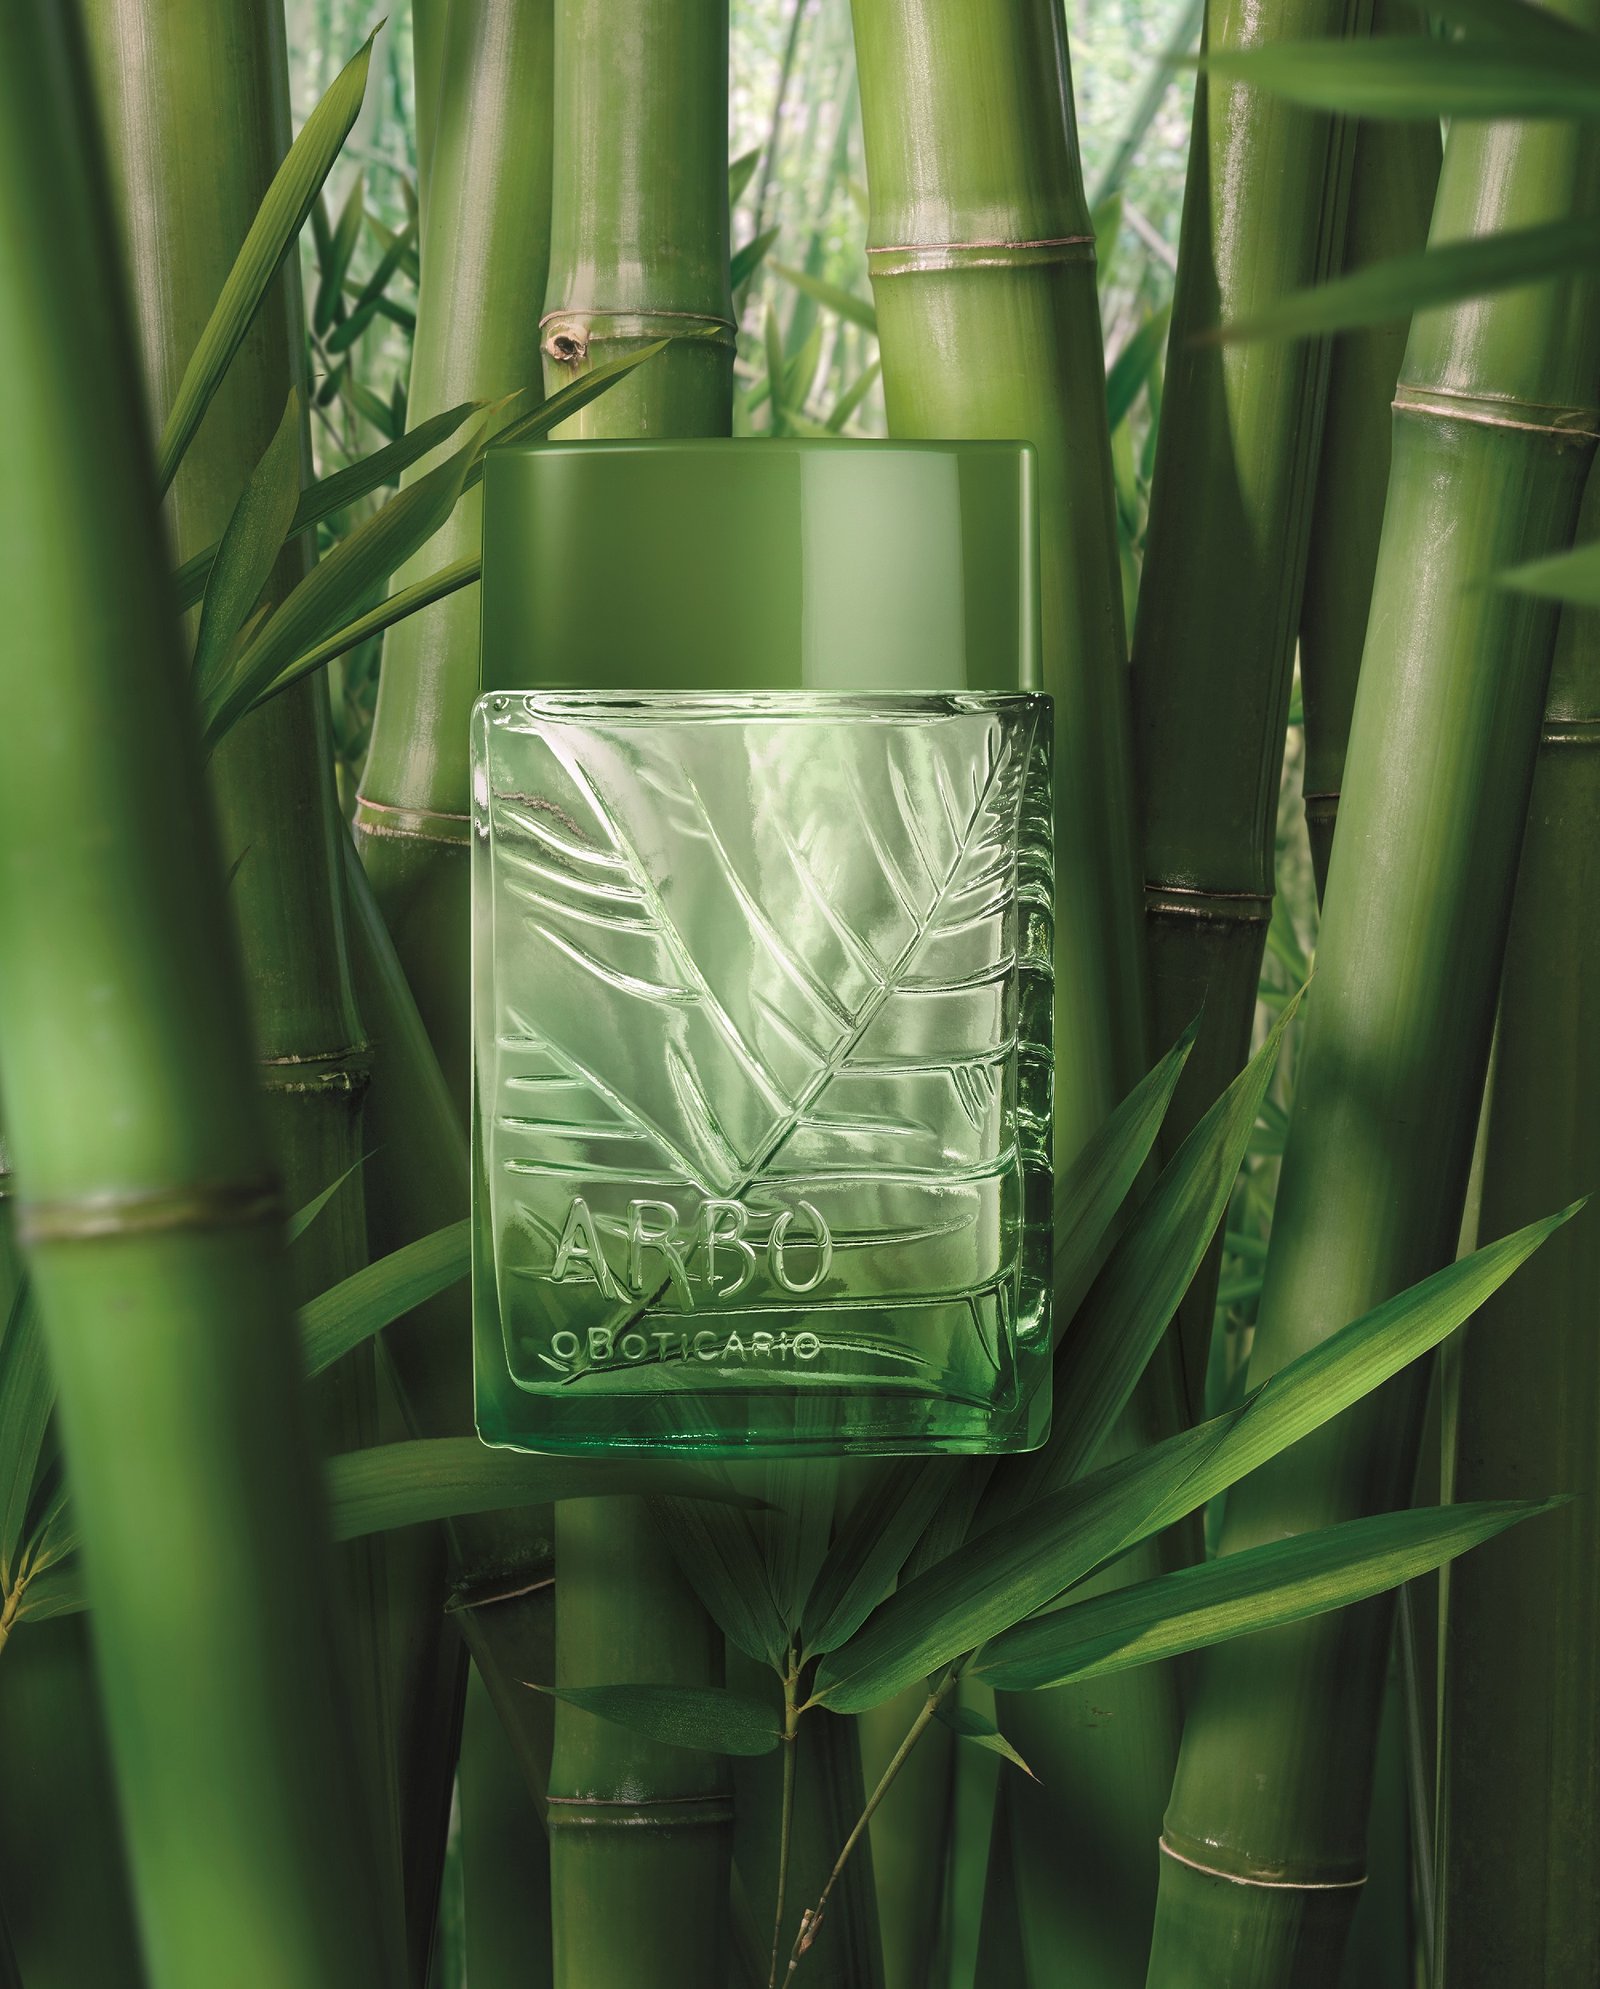 Você está visualizando atualmente Nova faceta do frescor natural: Arbo Puro traz a harmonia de notas aromáticas, frescor e leveza do acorde bambu